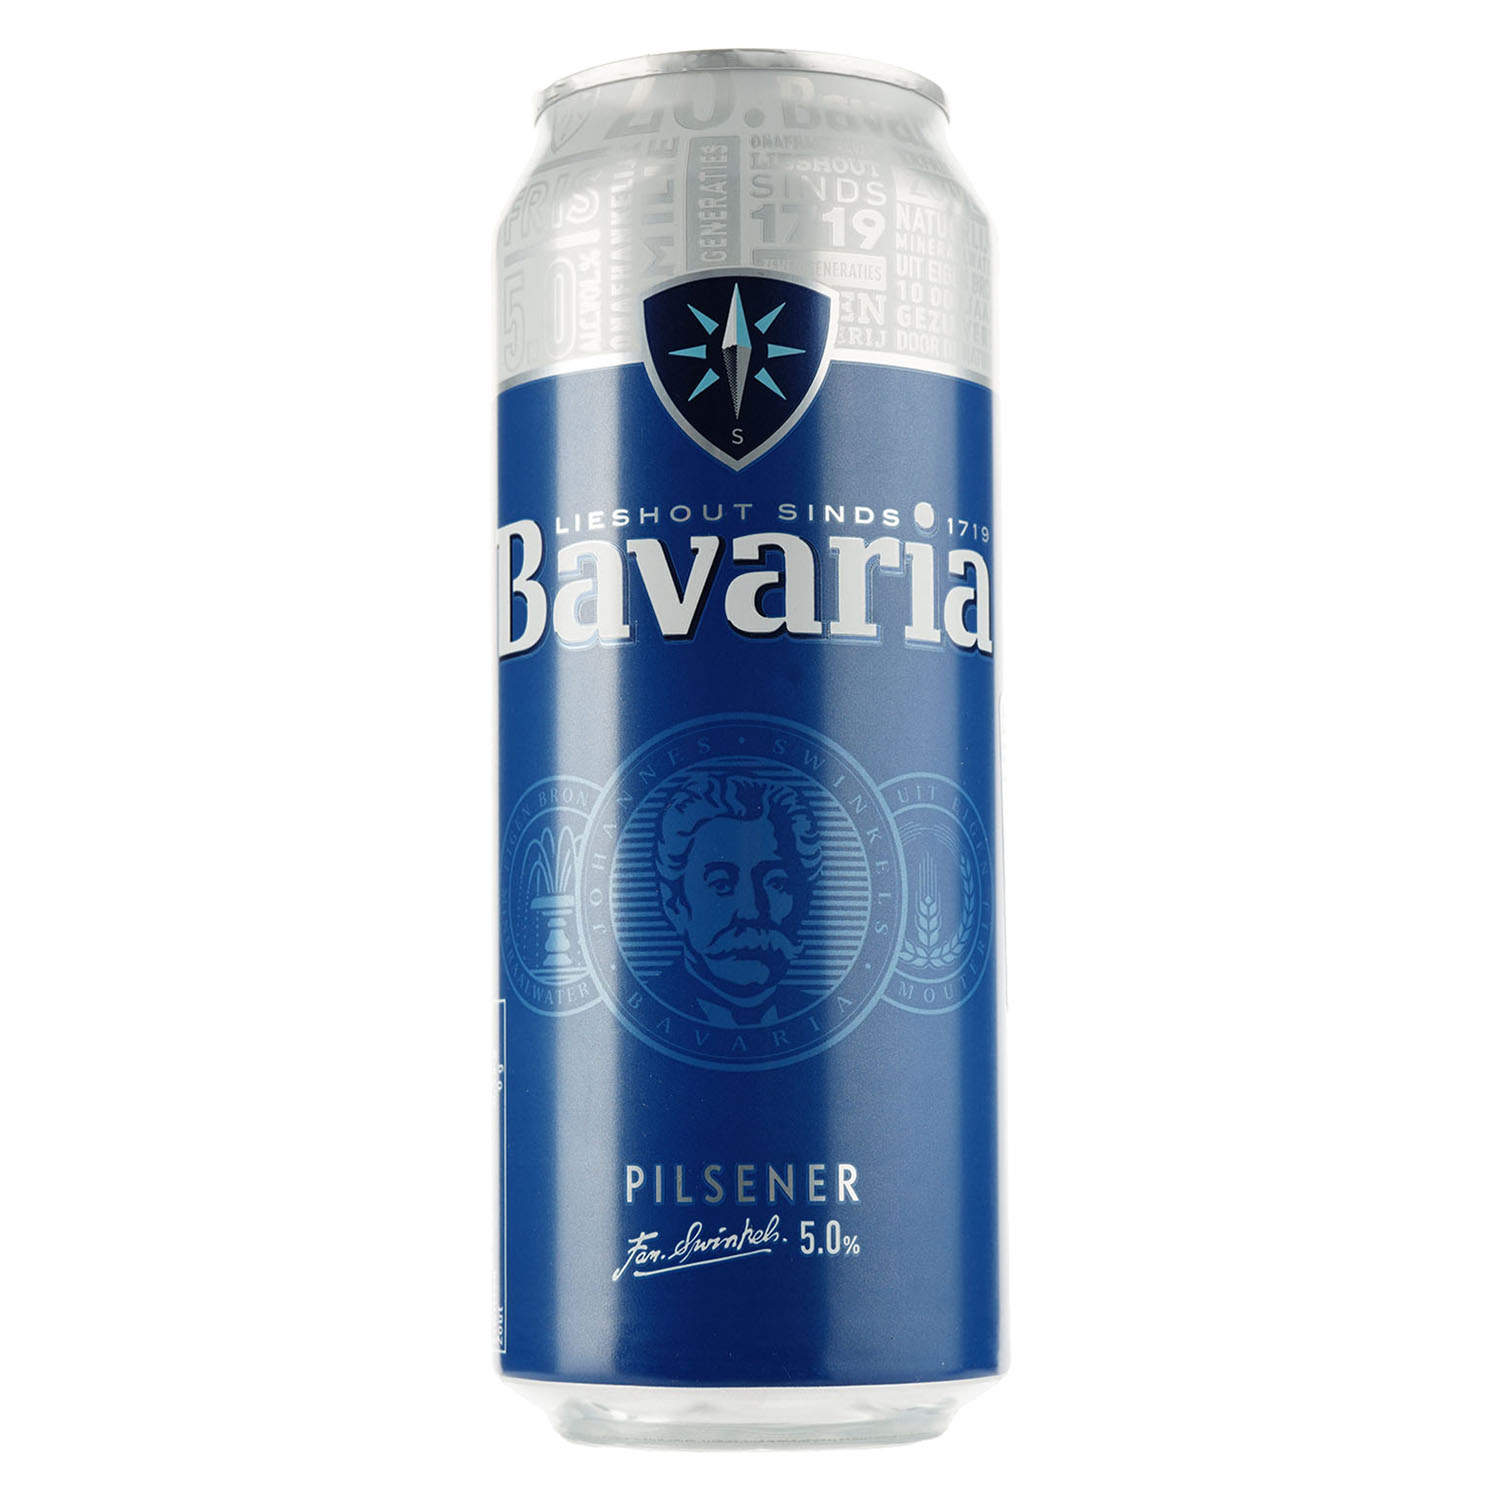 Пиво Bavaria, світле, фільтроване, 5%, з/б, 0,5 л - фото 1